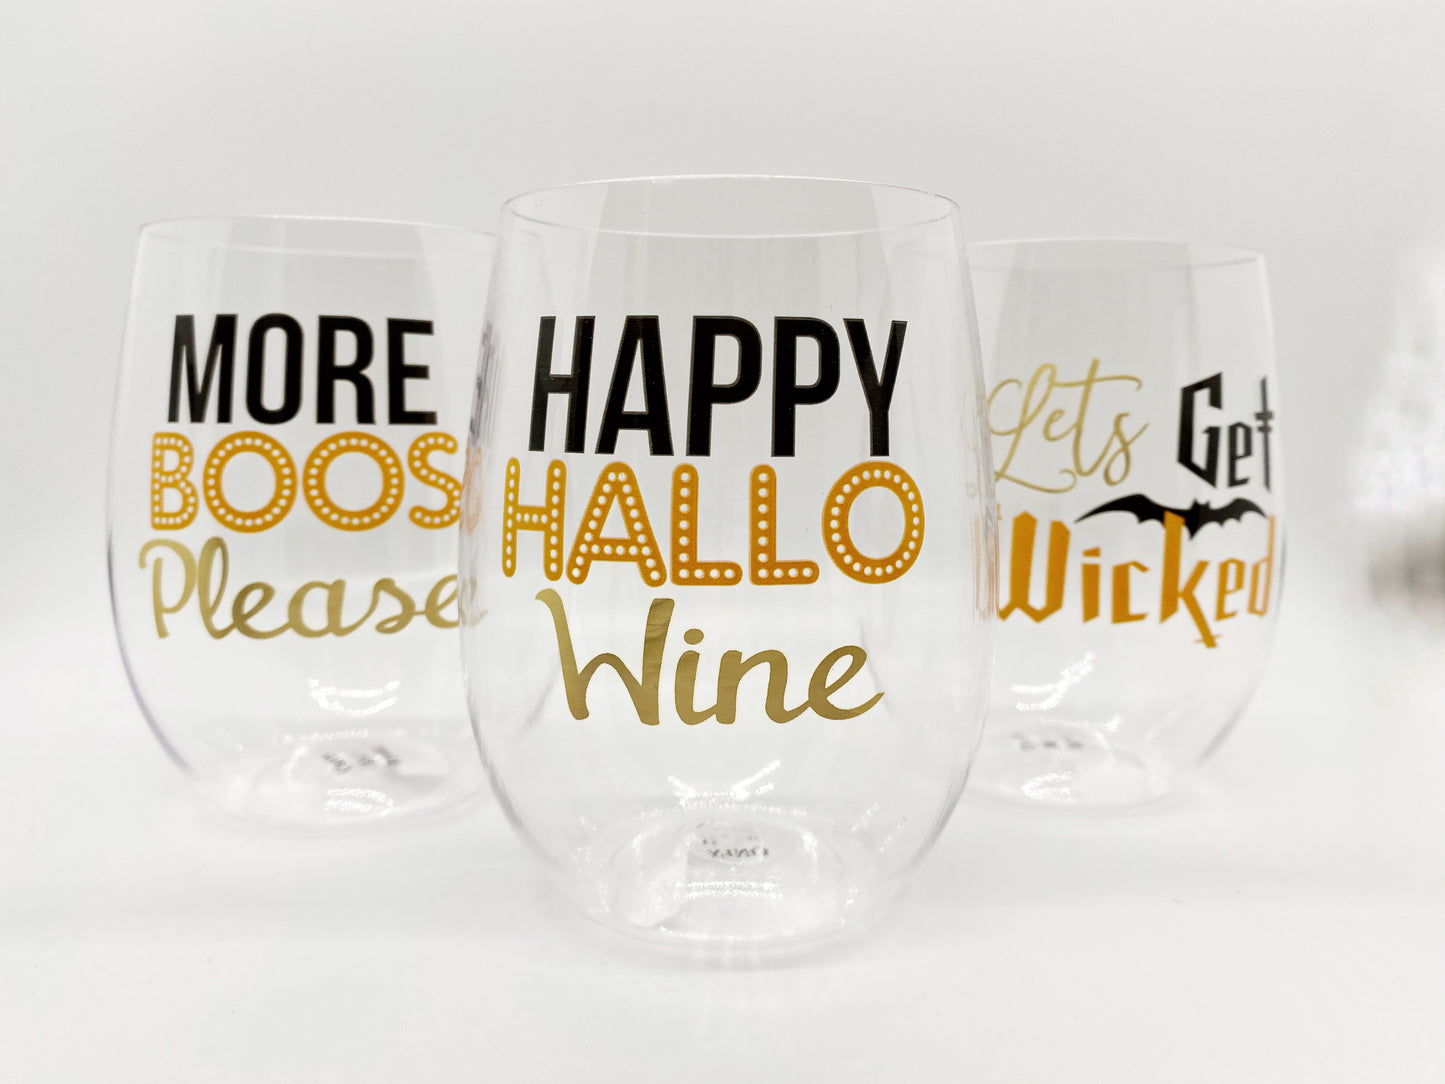 Happy HalloWine Wine Glass